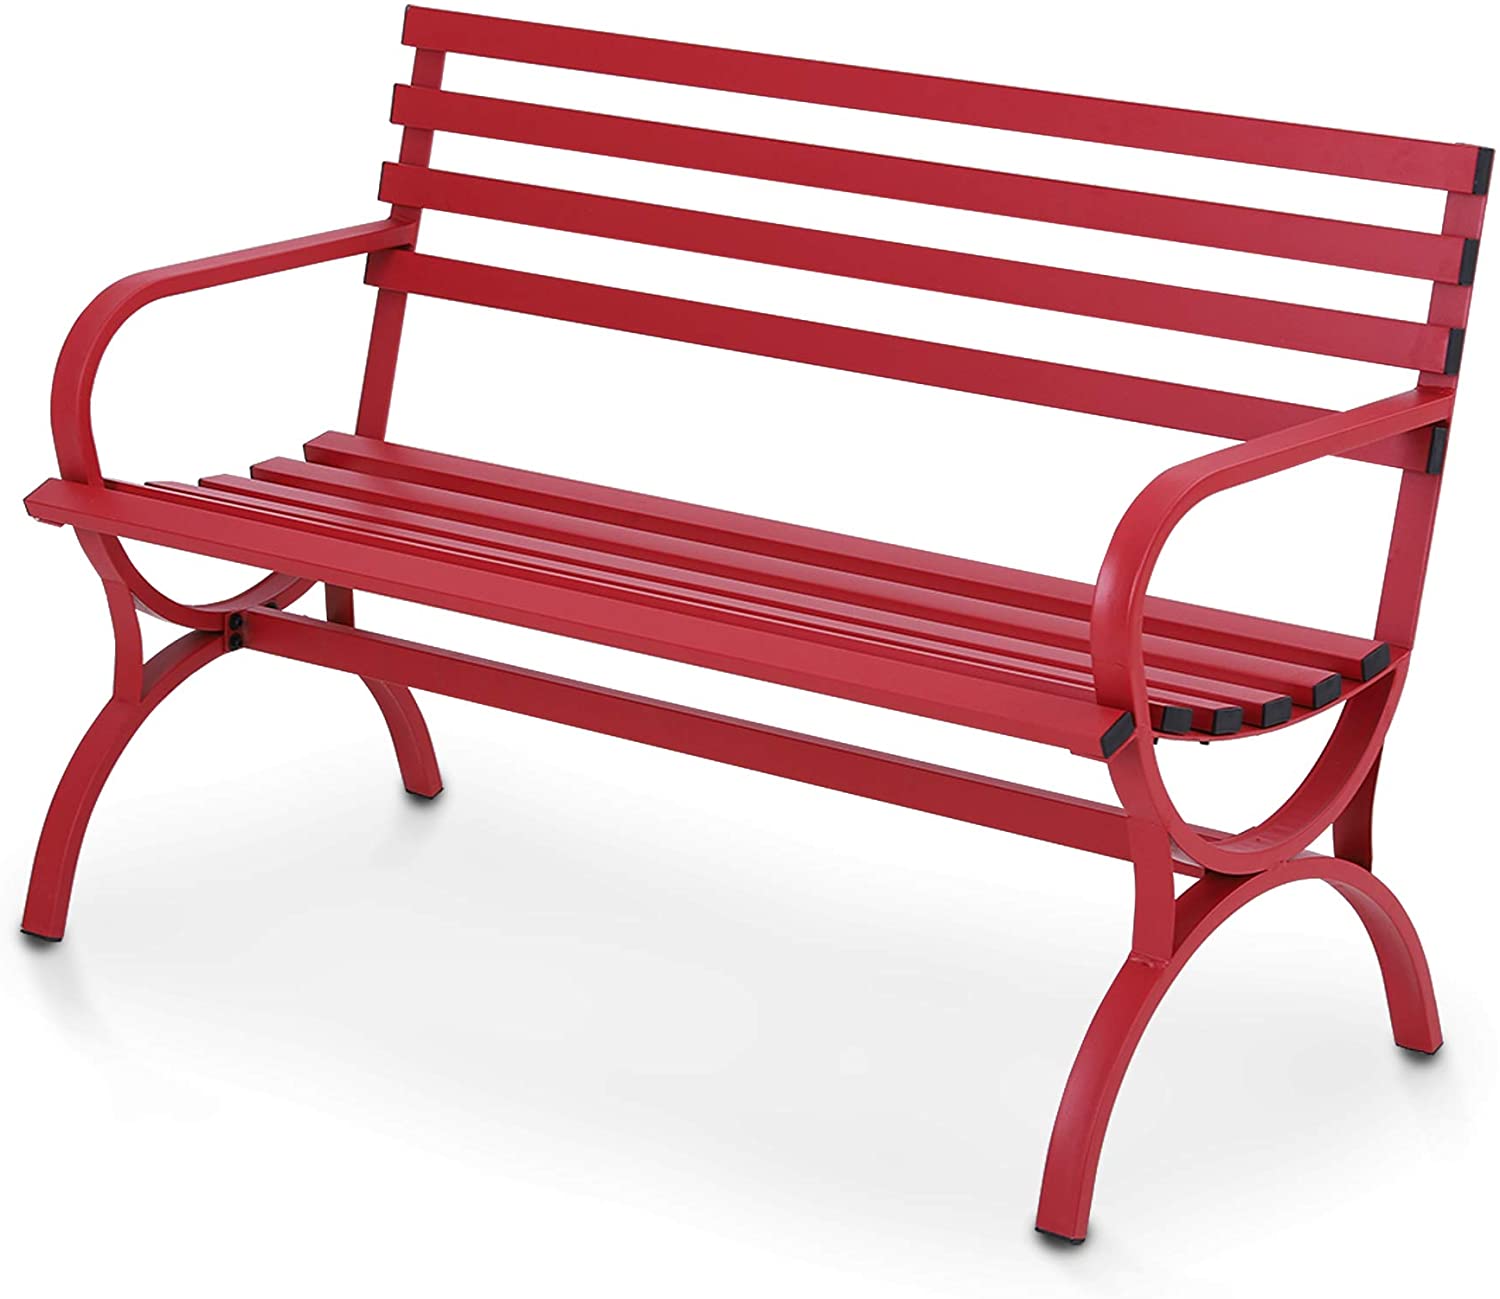 MF Studio Outdoor Durable Steel Bench - Red - image 3 of 6